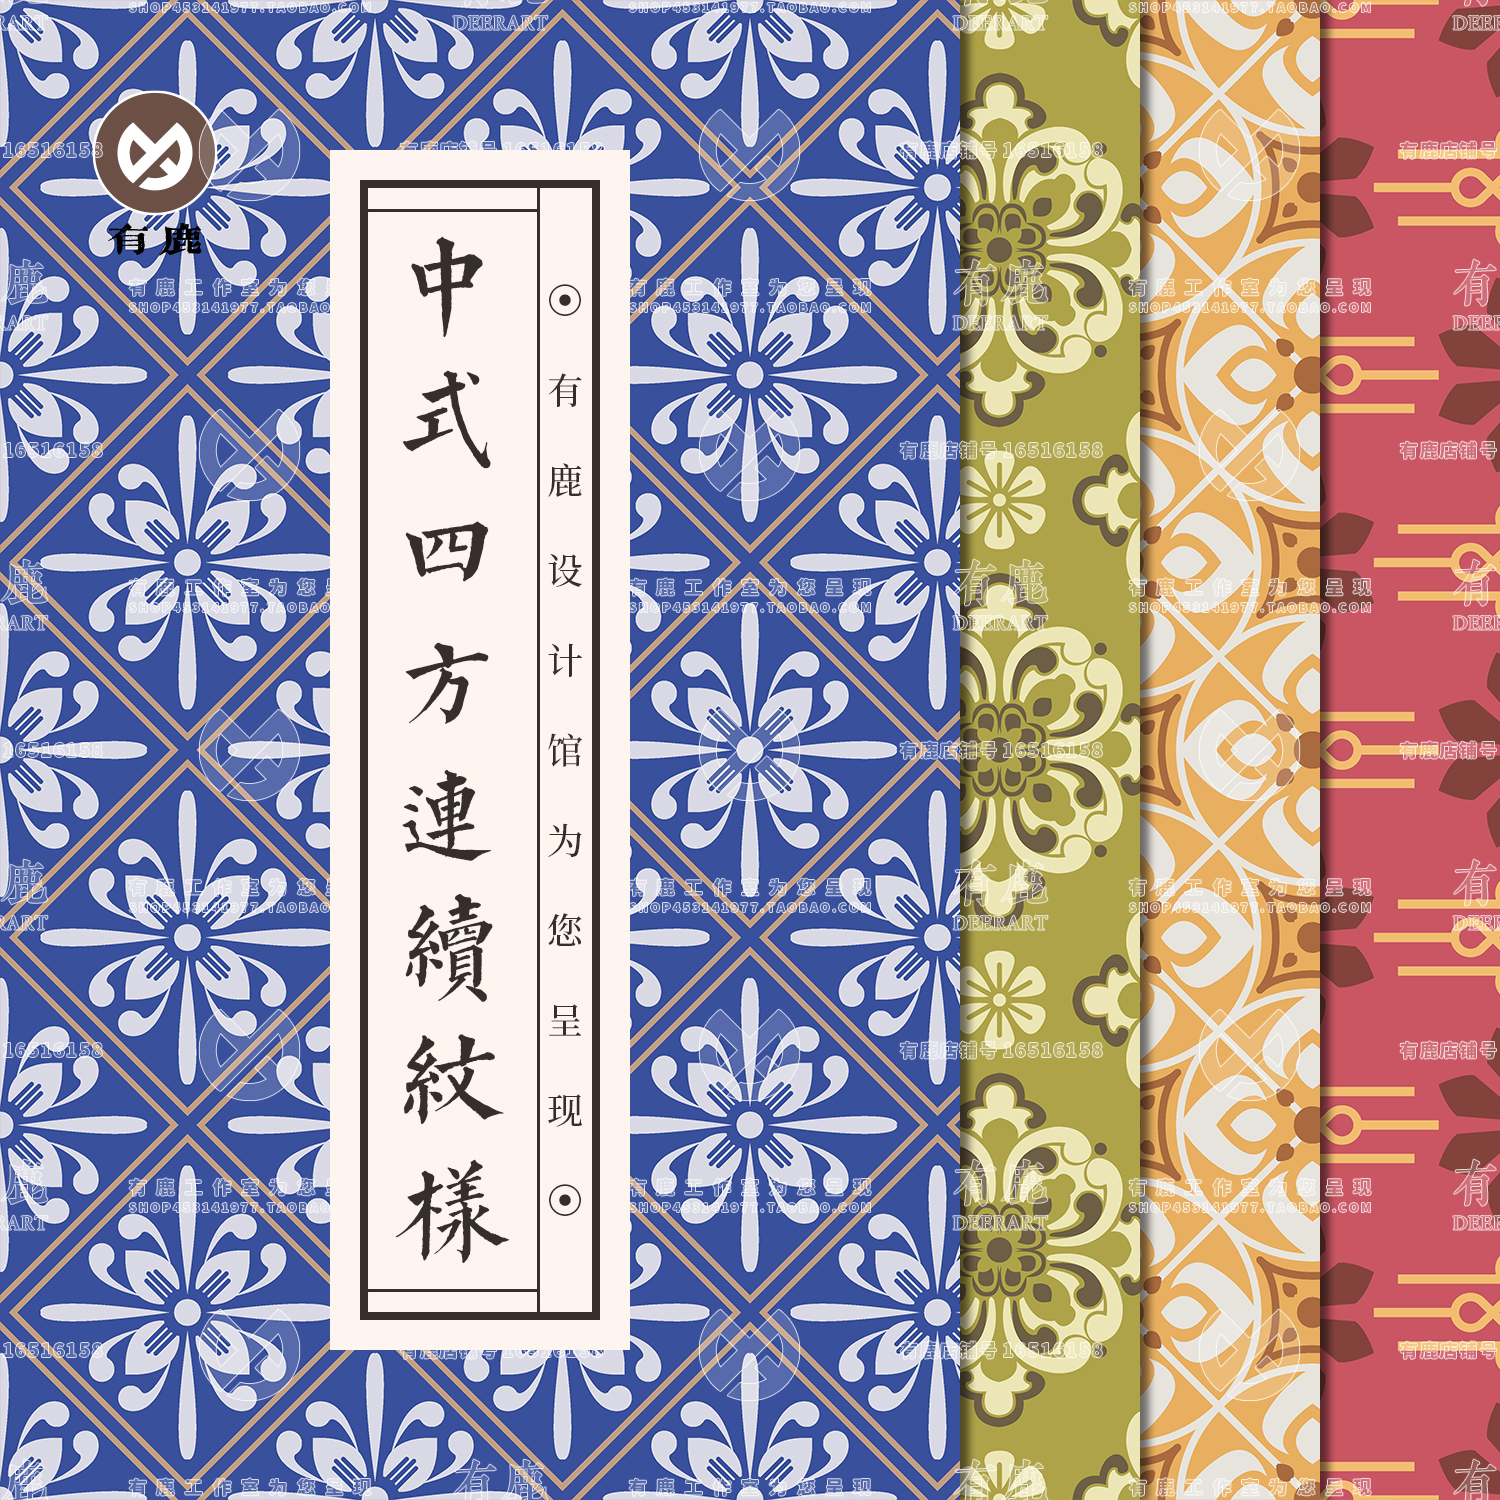 中国风中式传统花纹背景印花四方连续图案包装锦缎底纹AI矢量素材